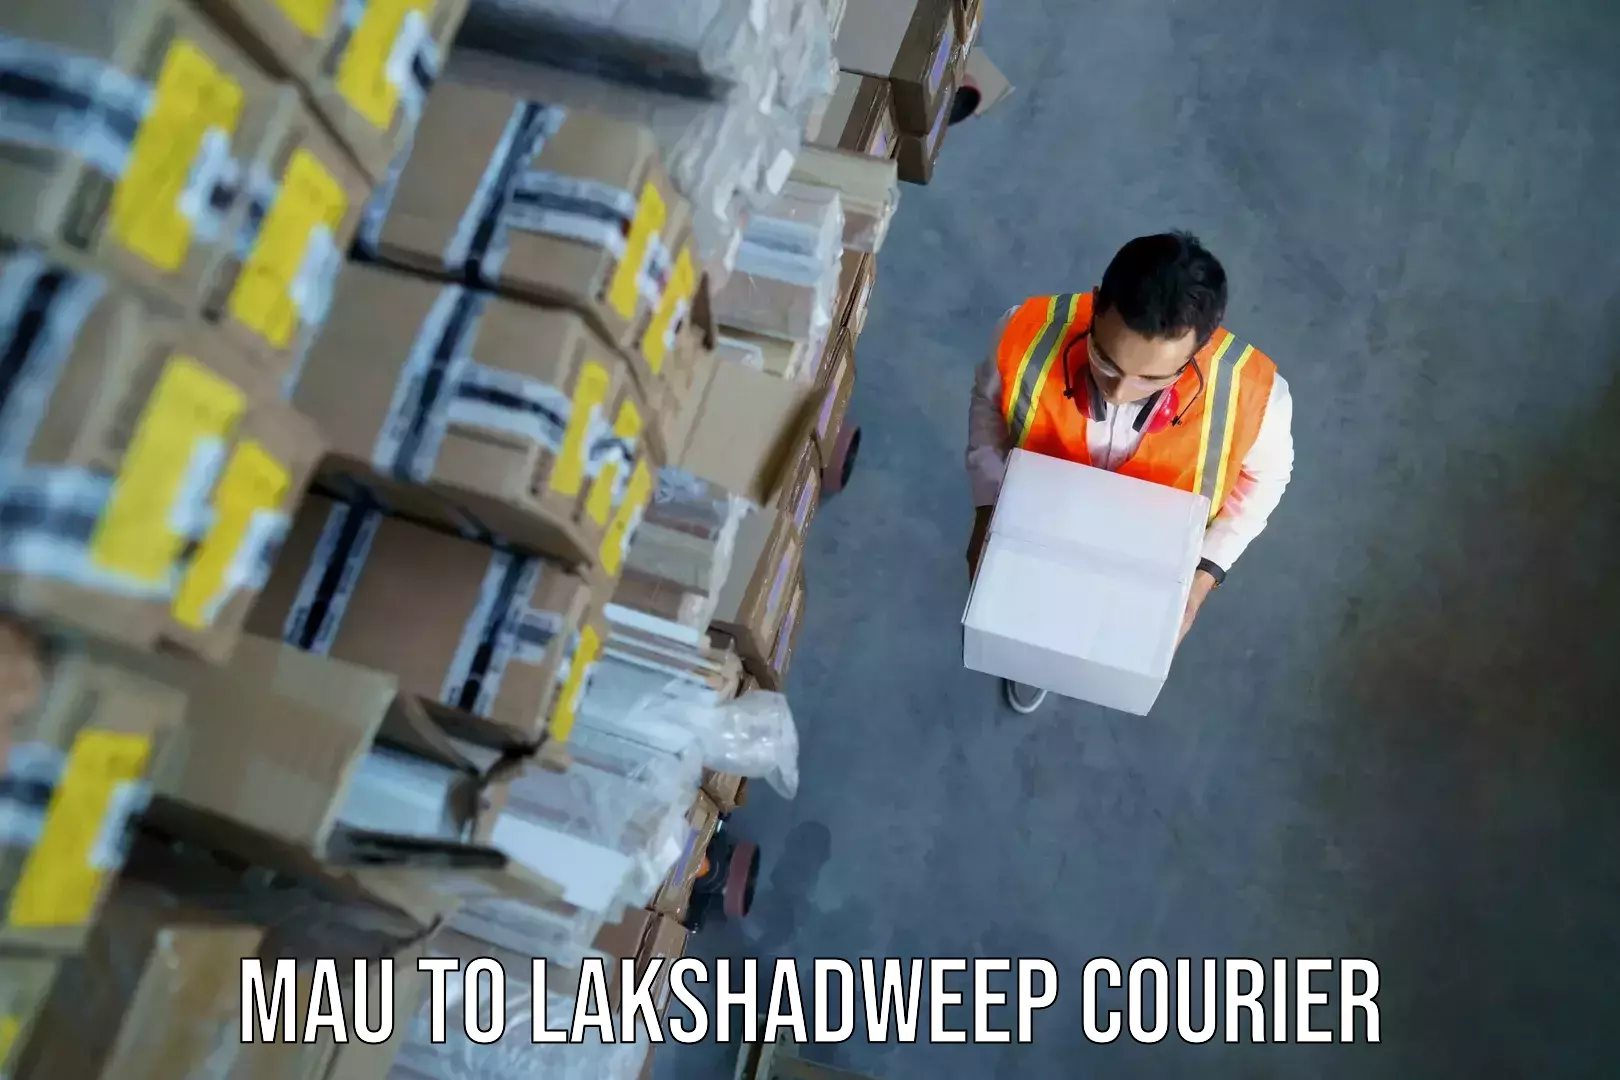 Baggage transport scheduler Mau to Lakshadweep